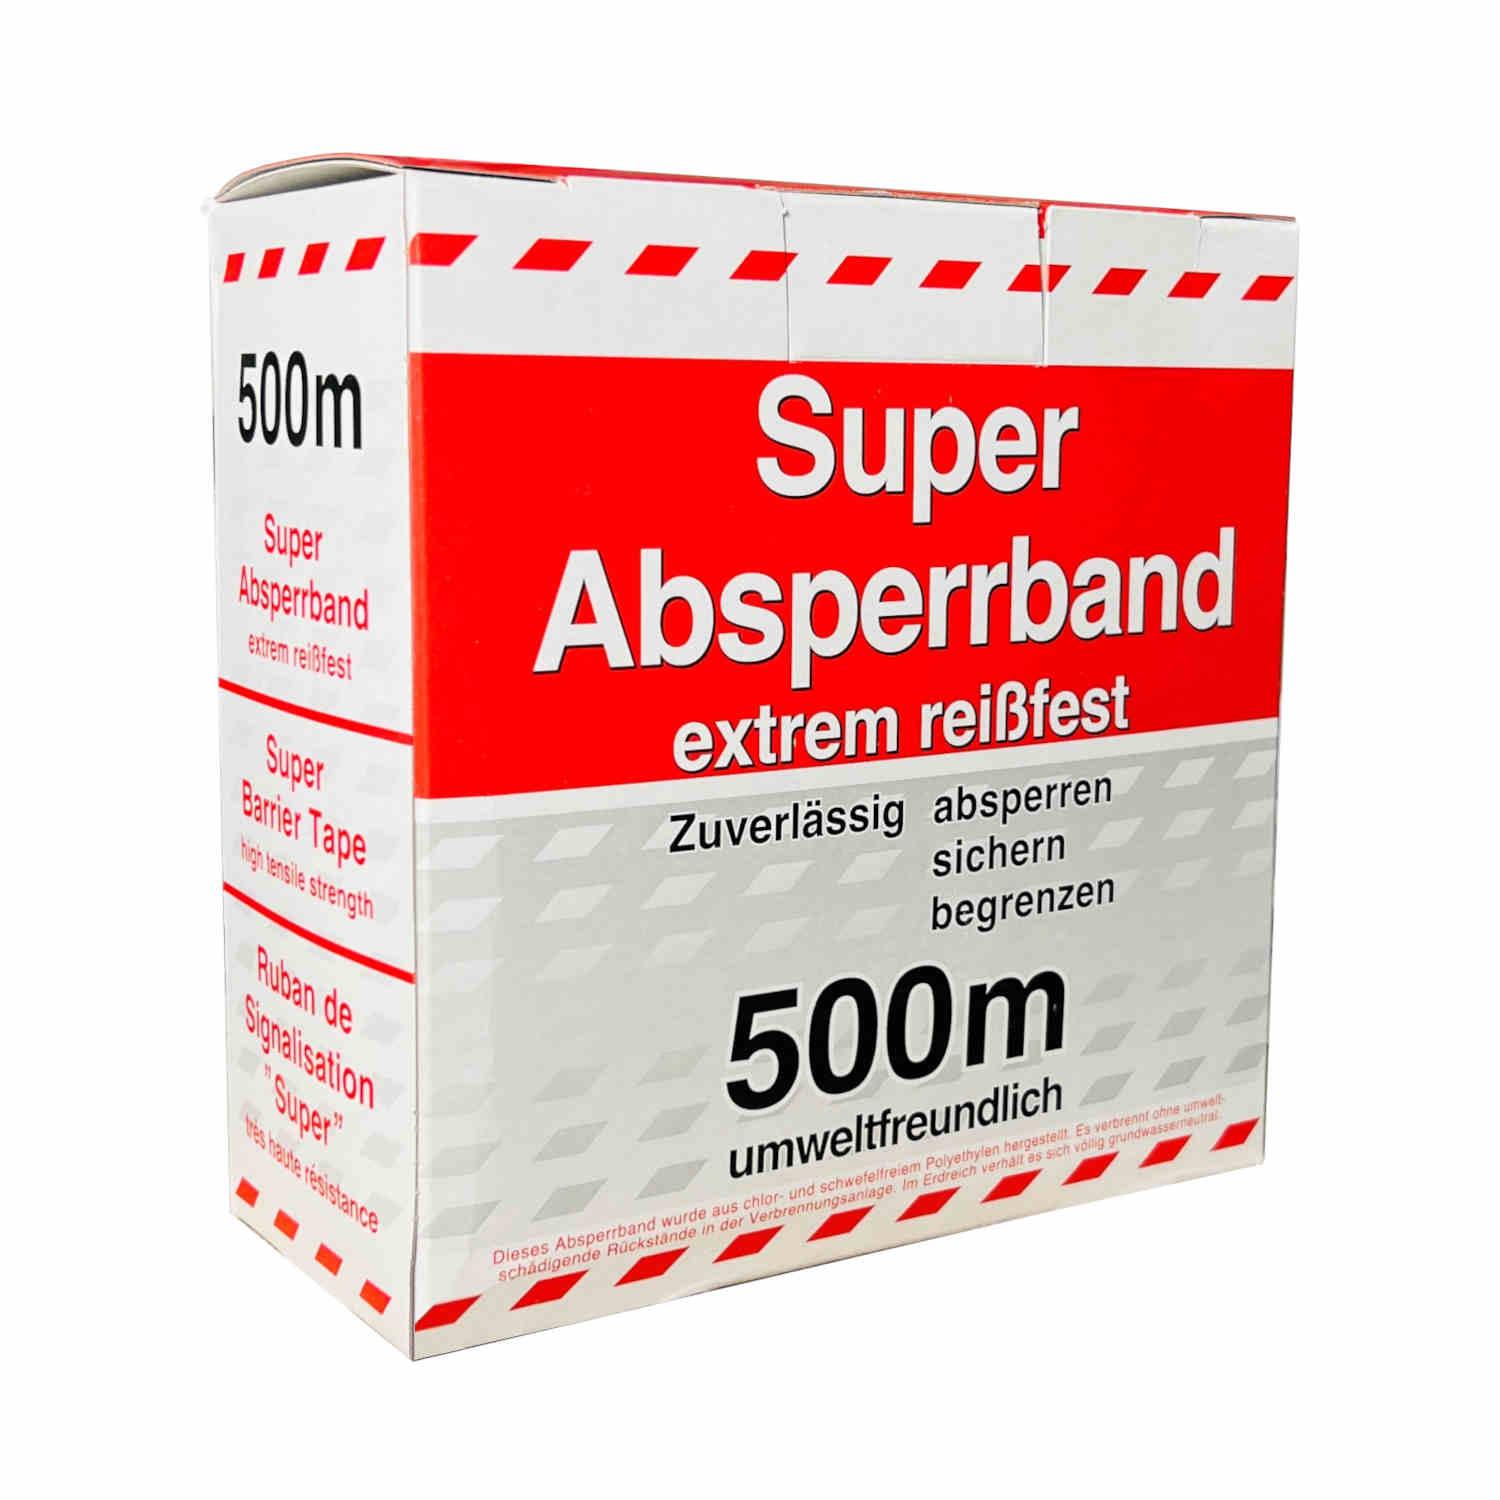 Absperrband Asbest 80mm / 500m Farbe rot/weiß